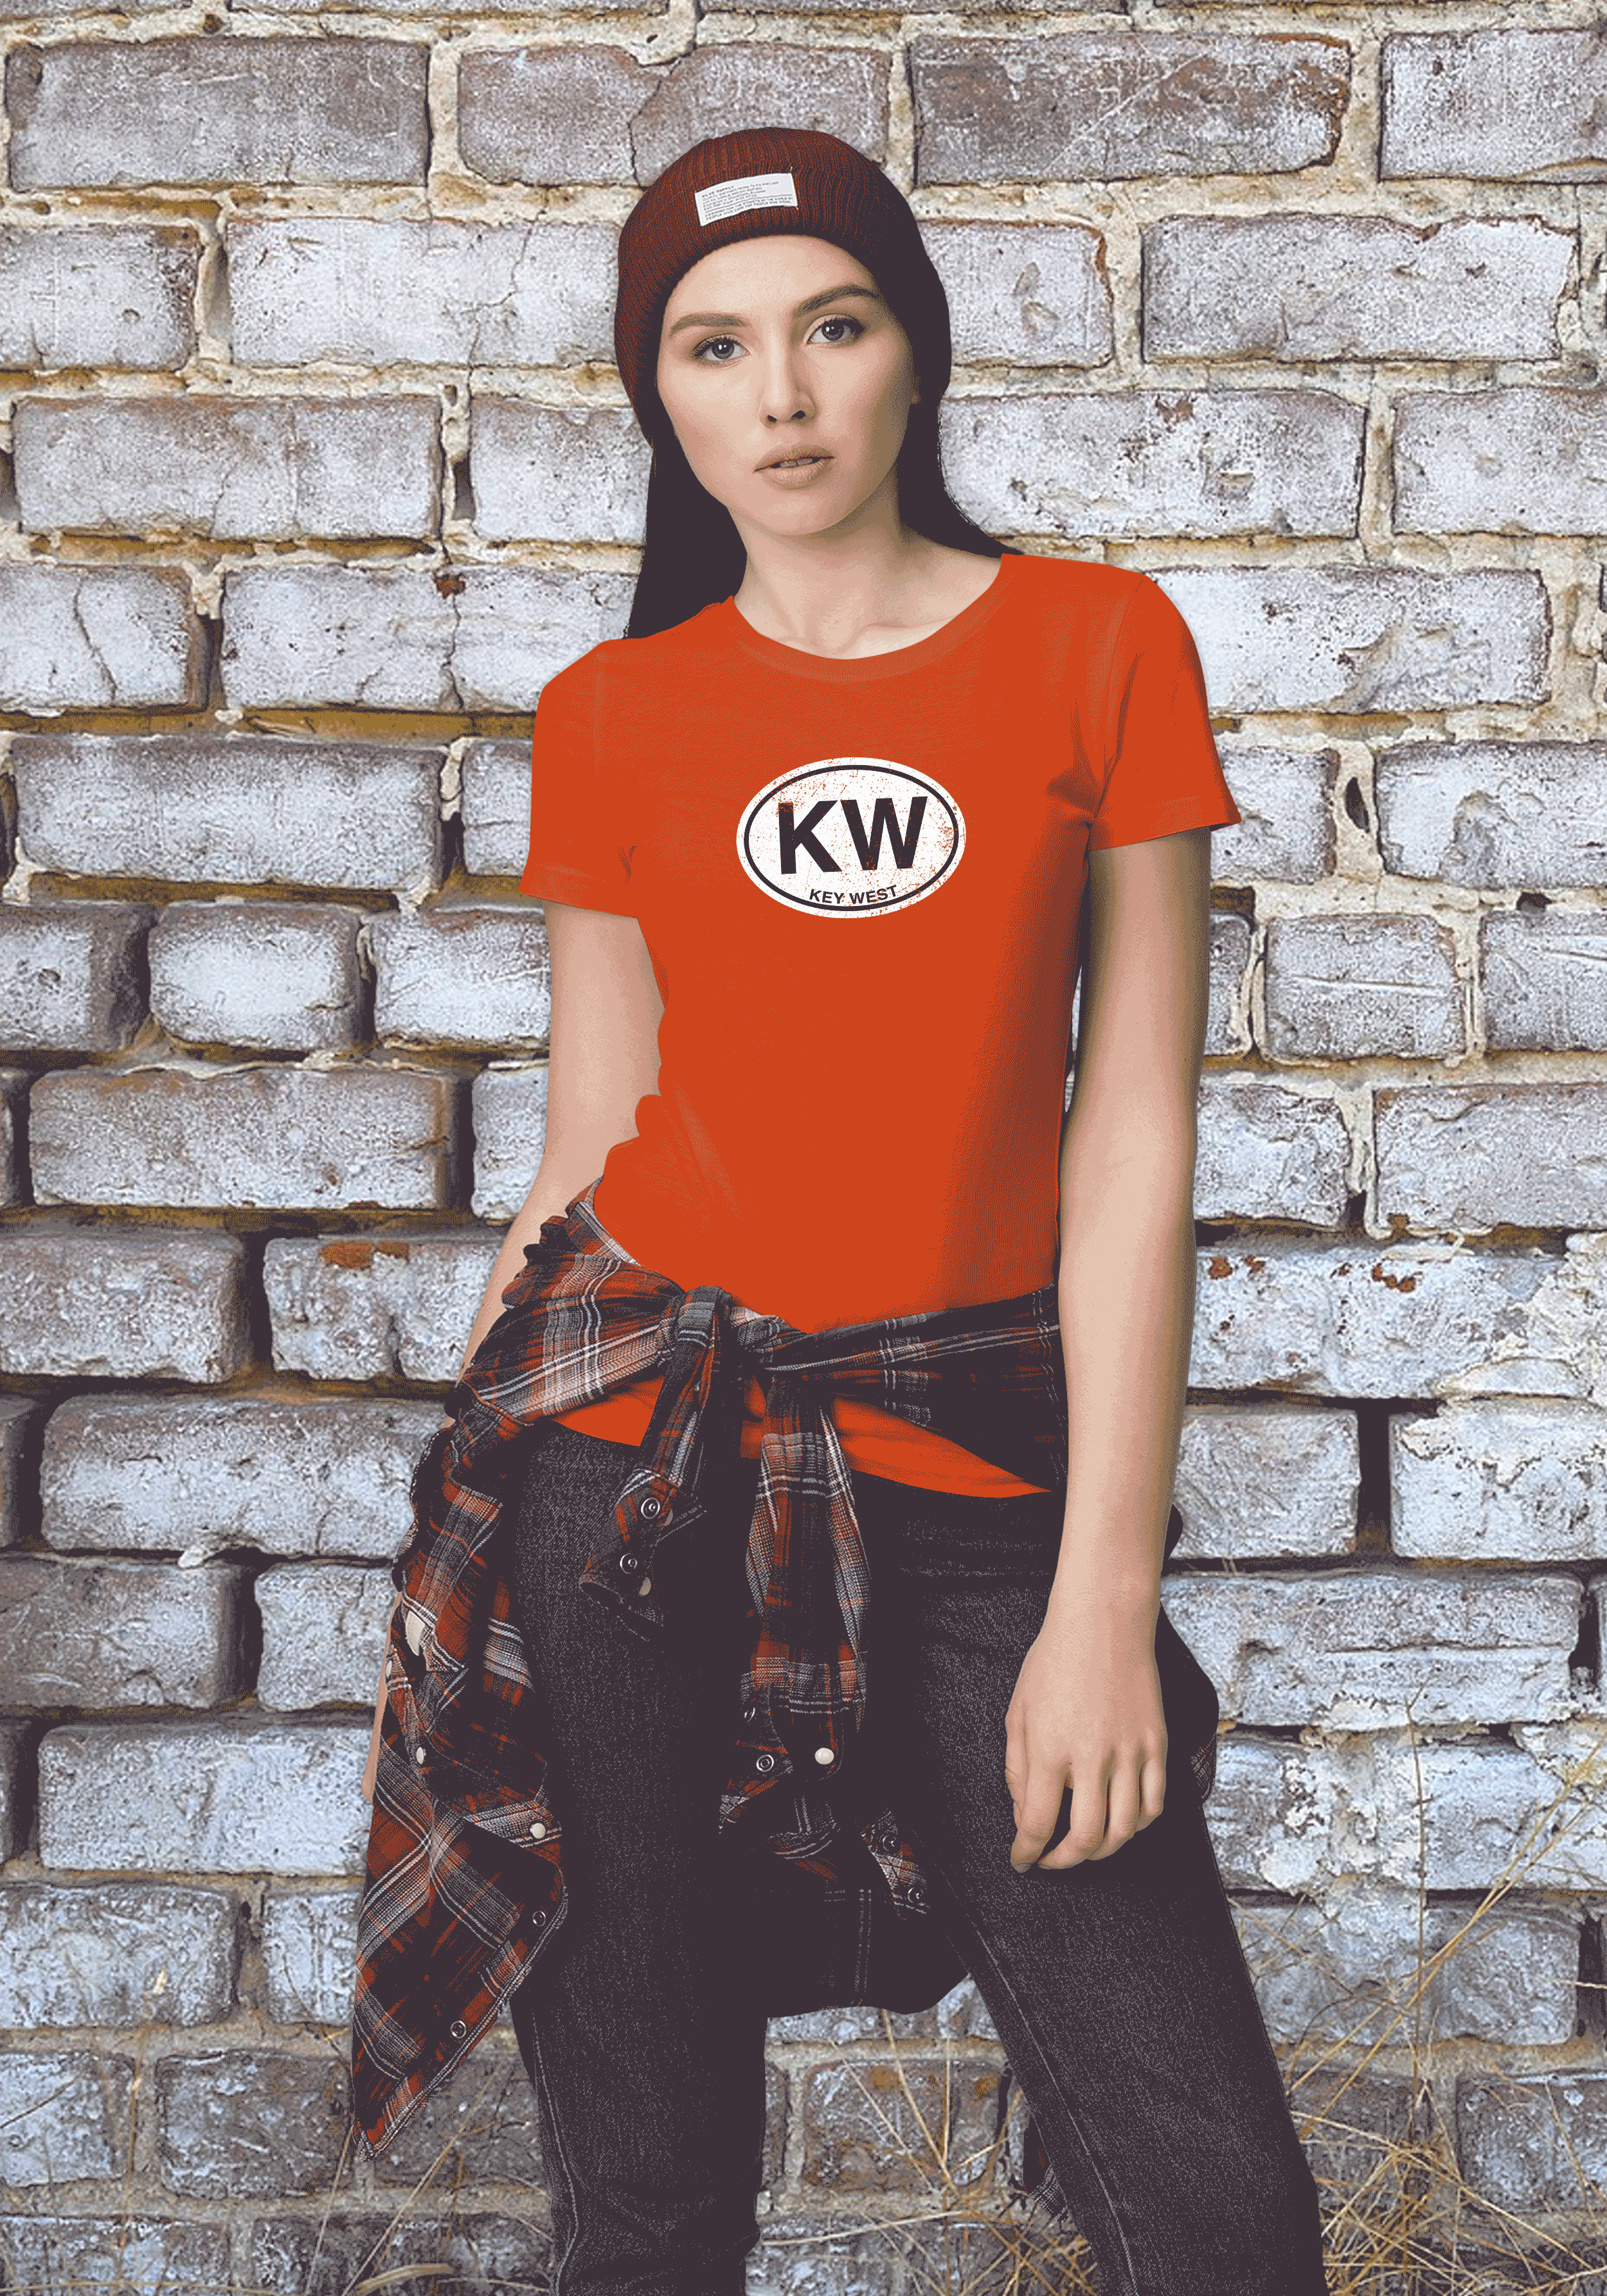 Key West Women's Classic T-Shirt Souvenirs - My Destination Location